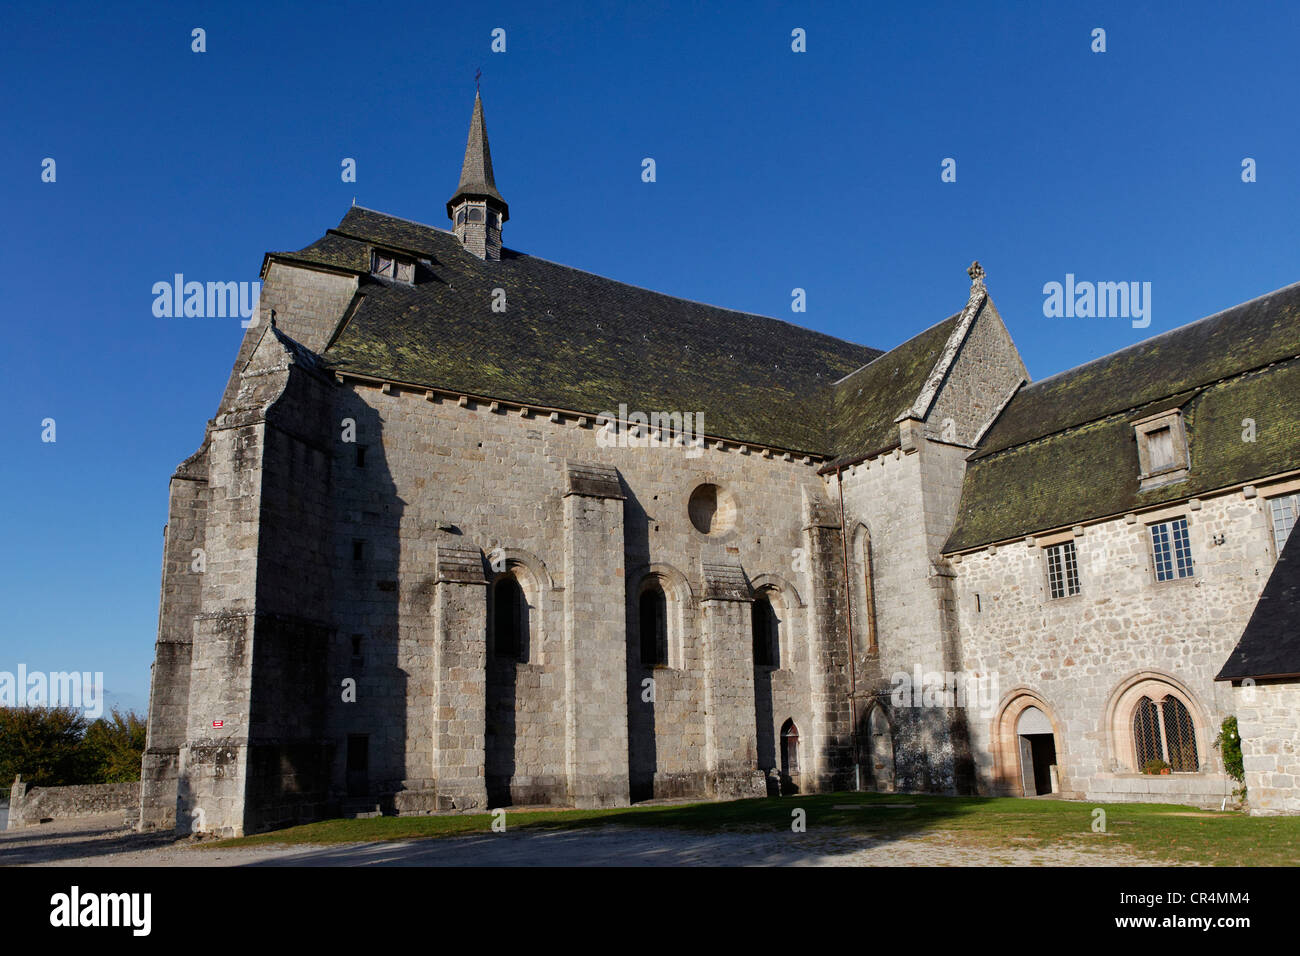 Eglise de Saint Michel des Anges, Saint Ange, Parc Naturel Régional de Millevaches en Limousin, Parc Naturel Régional de Millevaches Banque D'Images